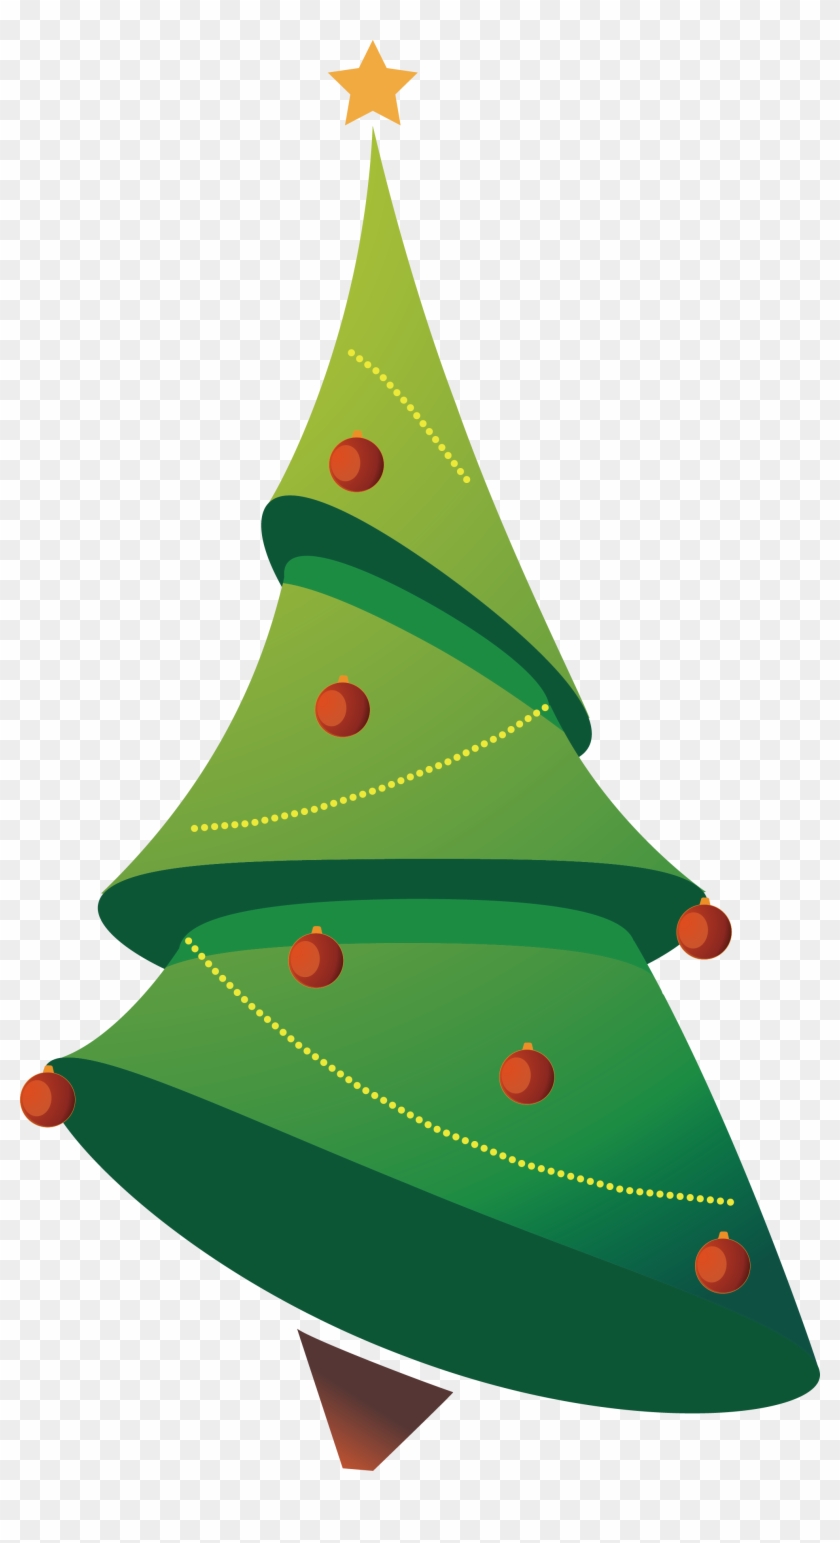 Christmas Tree Clip Art - Christmas Tree Clip Art #618472